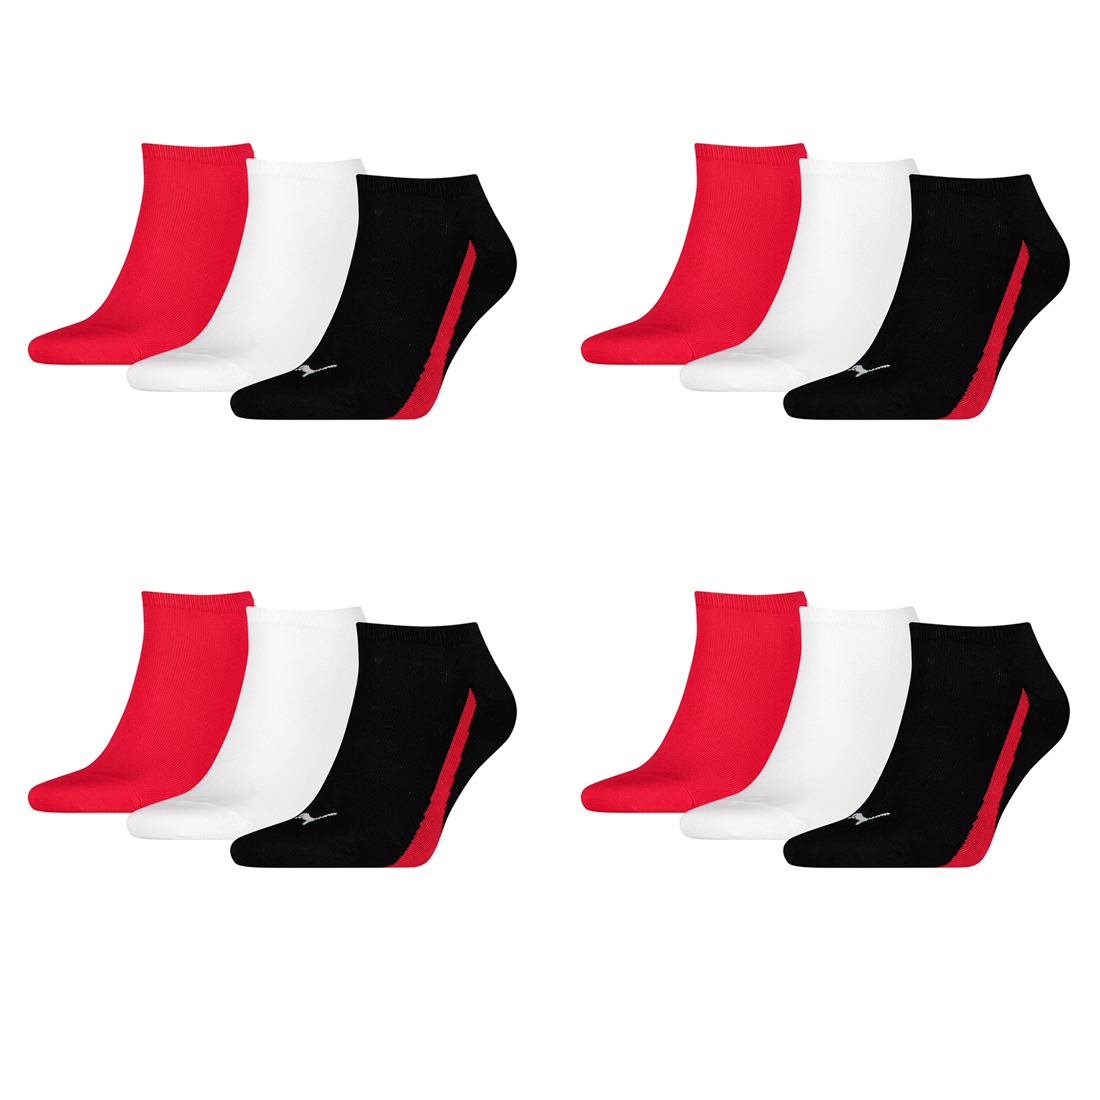 12 Paar Puma Lifestyle Sneaker Socken Gr. 35 - 46 Unisex Kurzsocke Füßlinge